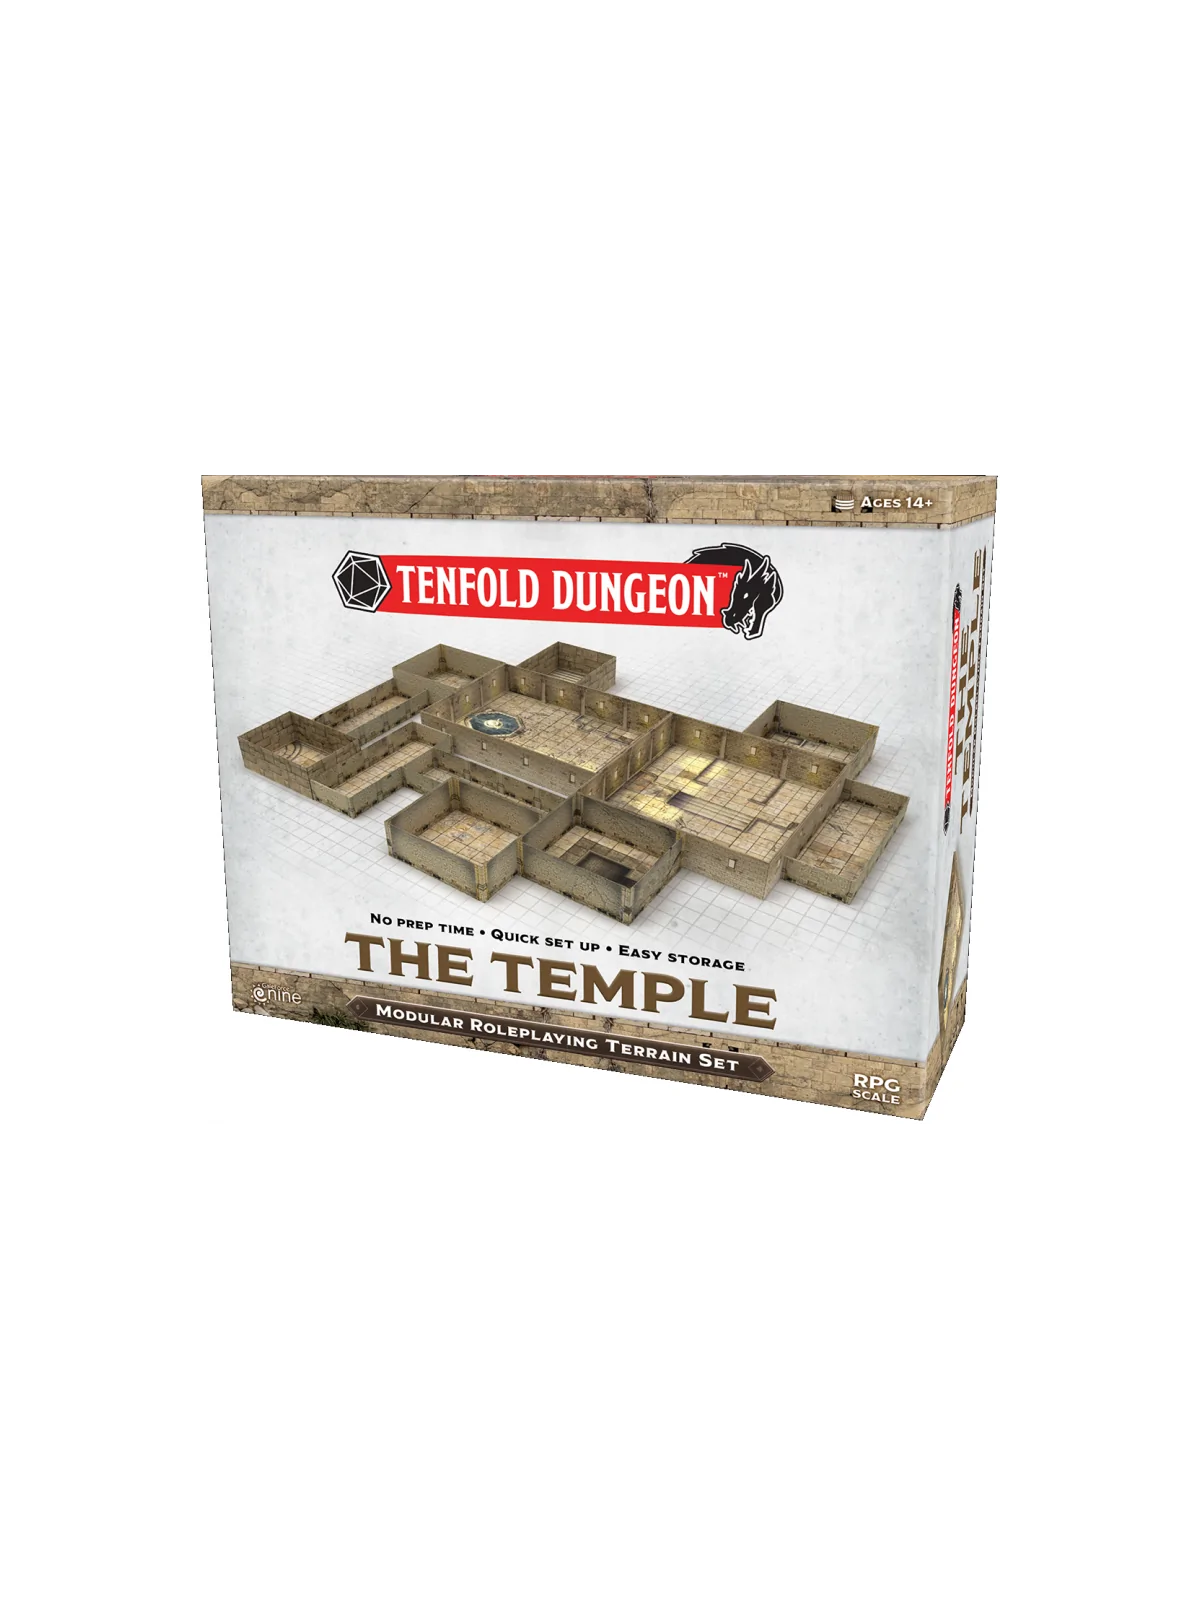 Comprar Tenfold Dungeon: The Temple (Inglés) barato al mejor precio 61